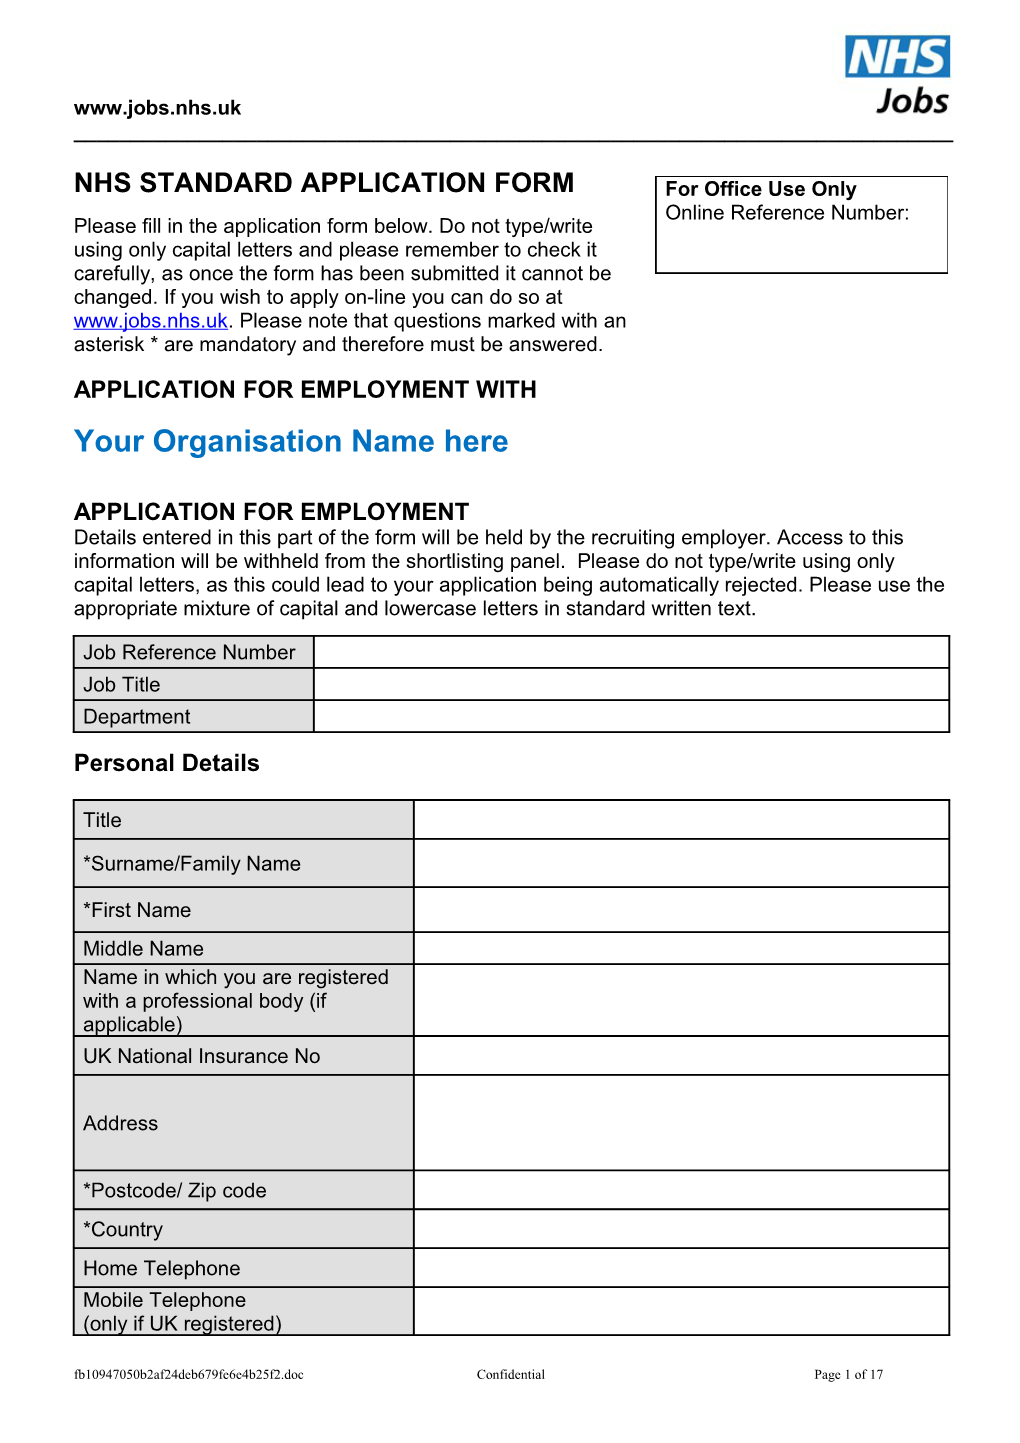 NHS Standard Application Form